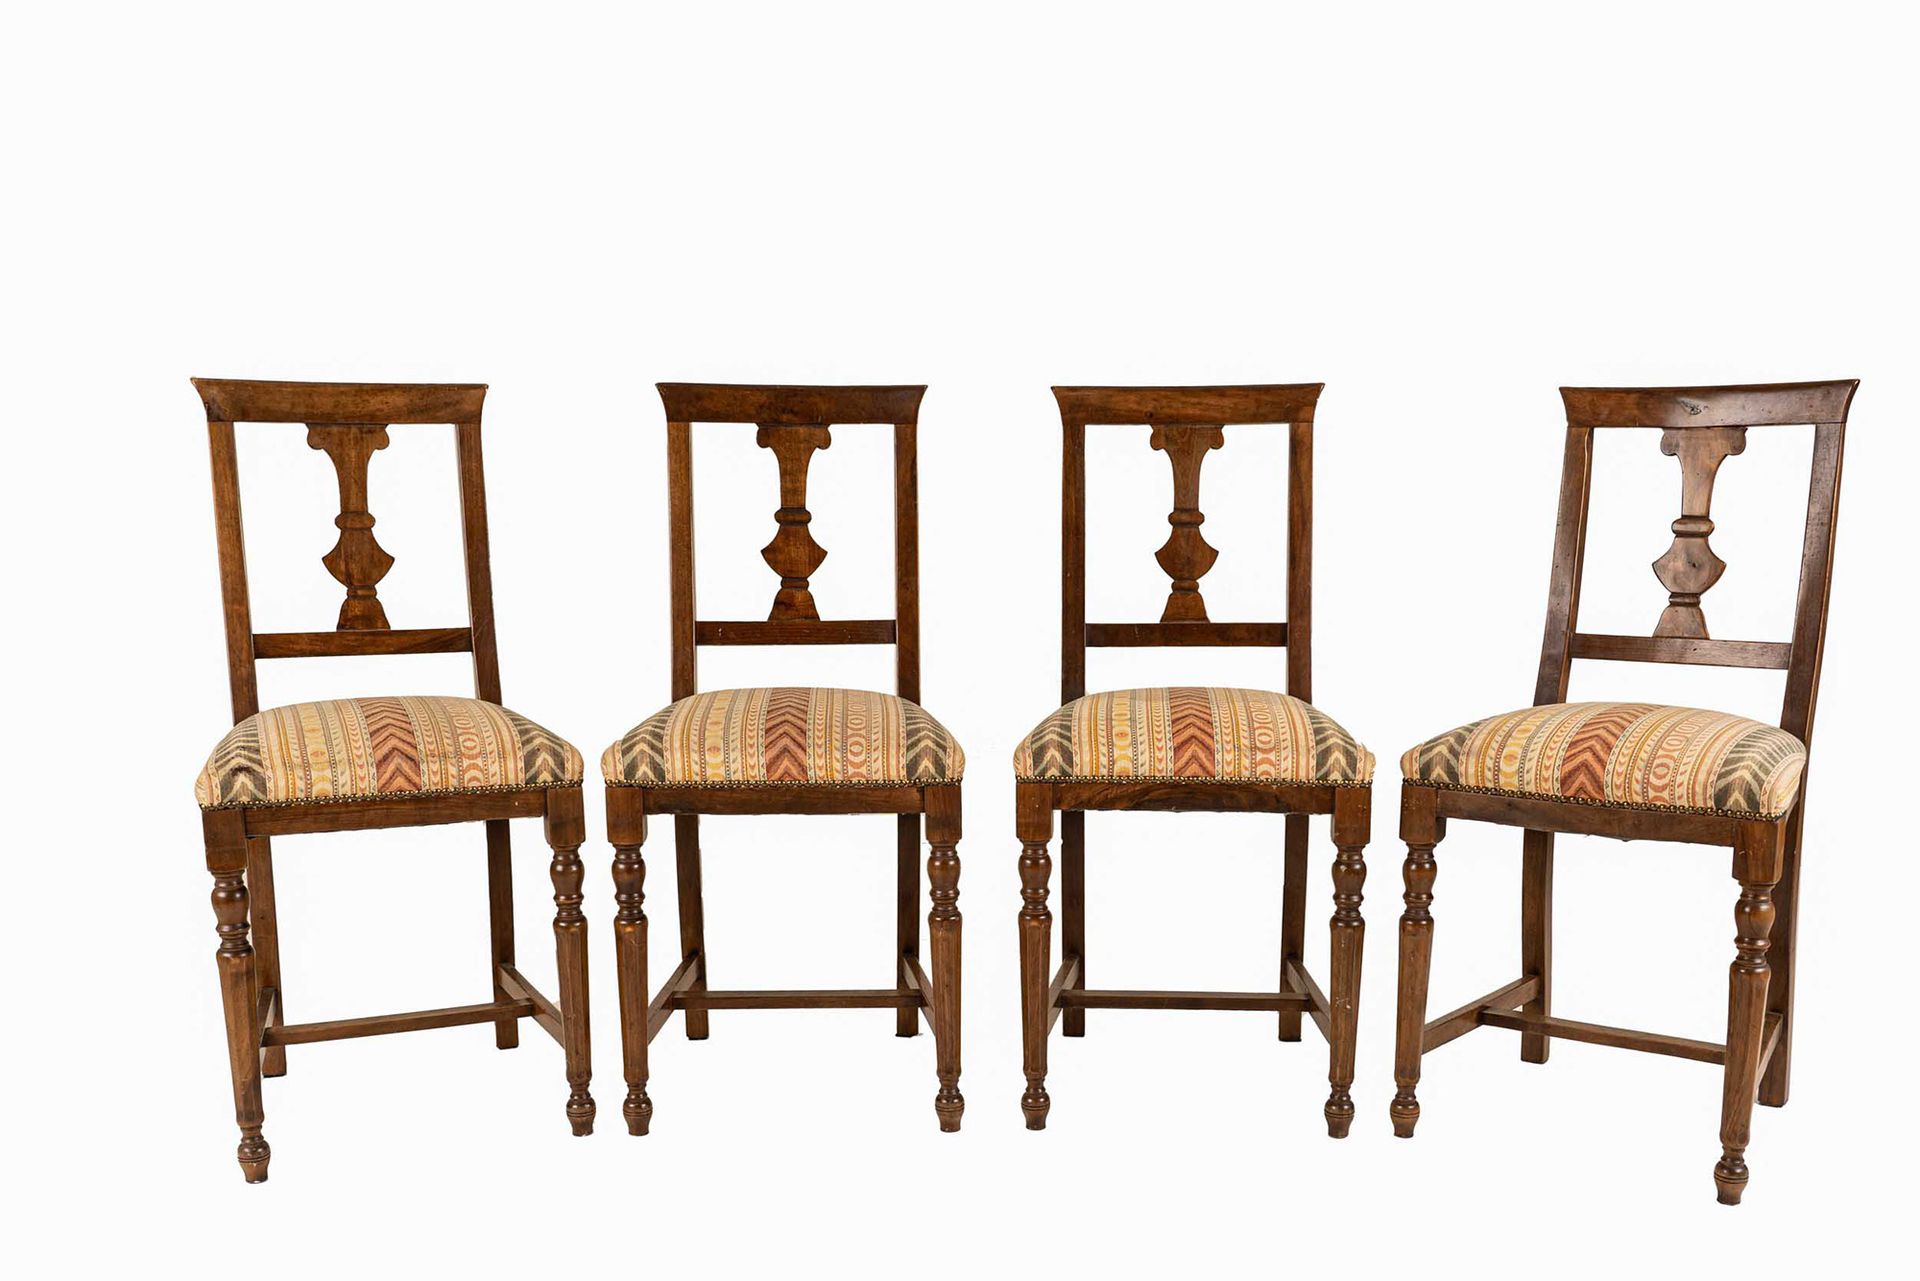 Null 四把18世纪风格的椅子

20世纪初

胡桃木，花瓶形文件夹，由H形横梁连接的车腿

44x40x95厘米